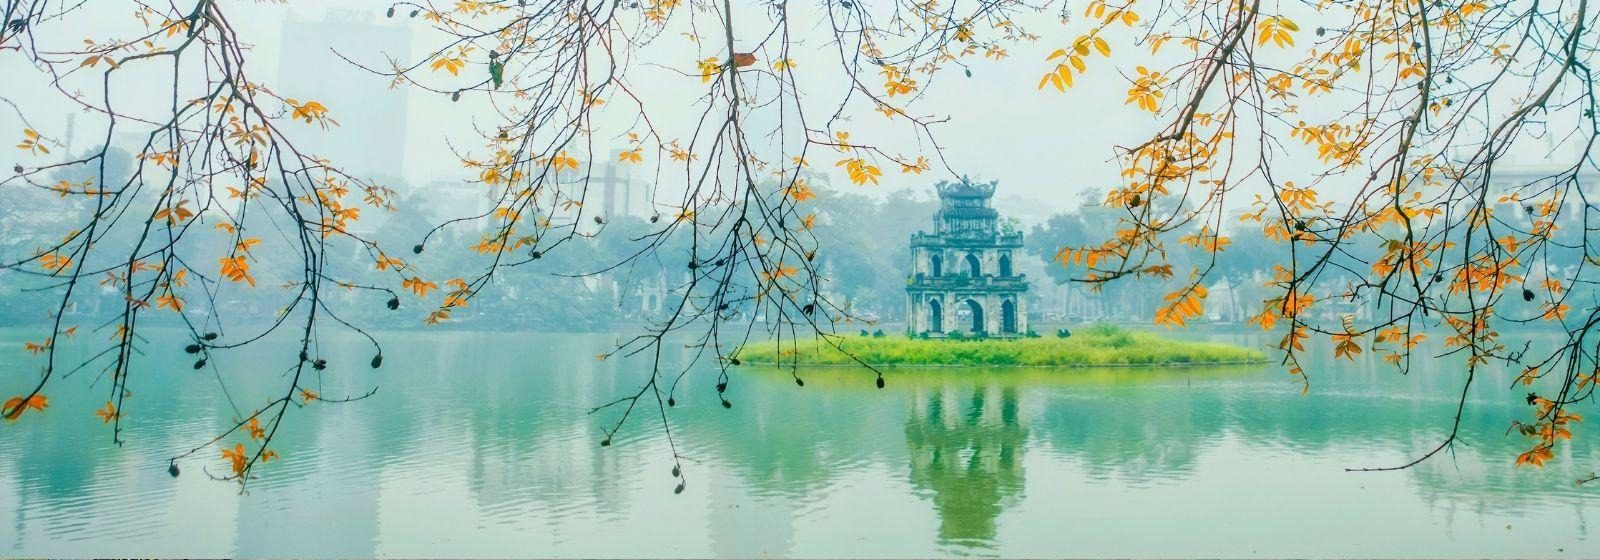 Hanoi - Hoan Kiem Lake